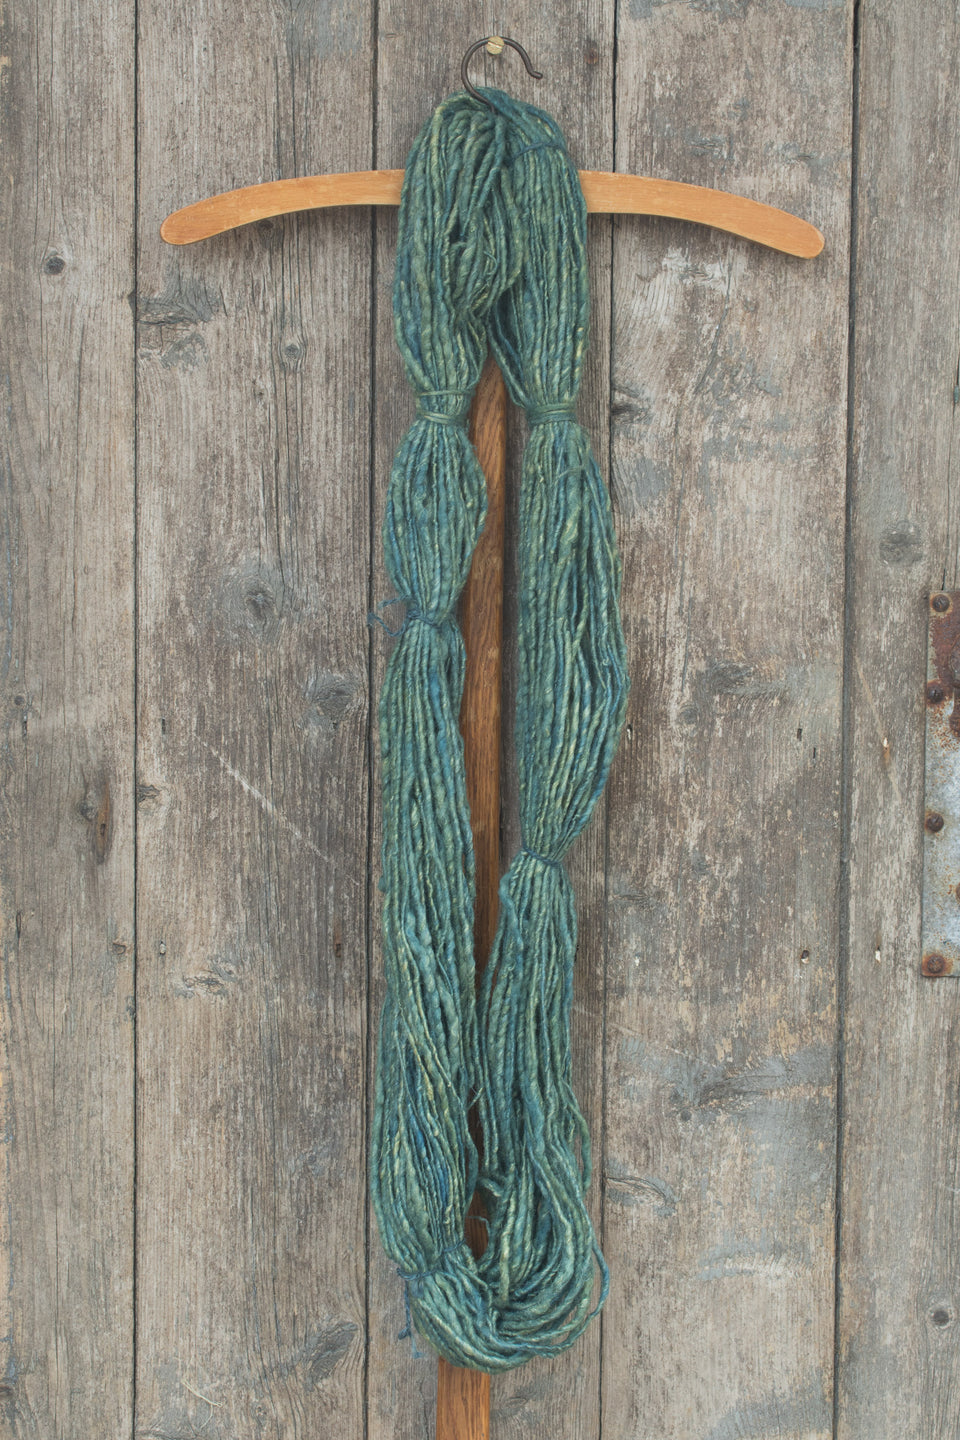 handspun, hand-dyed indigo art yarn. shetland wool, linen, tussah silk shown in a hank